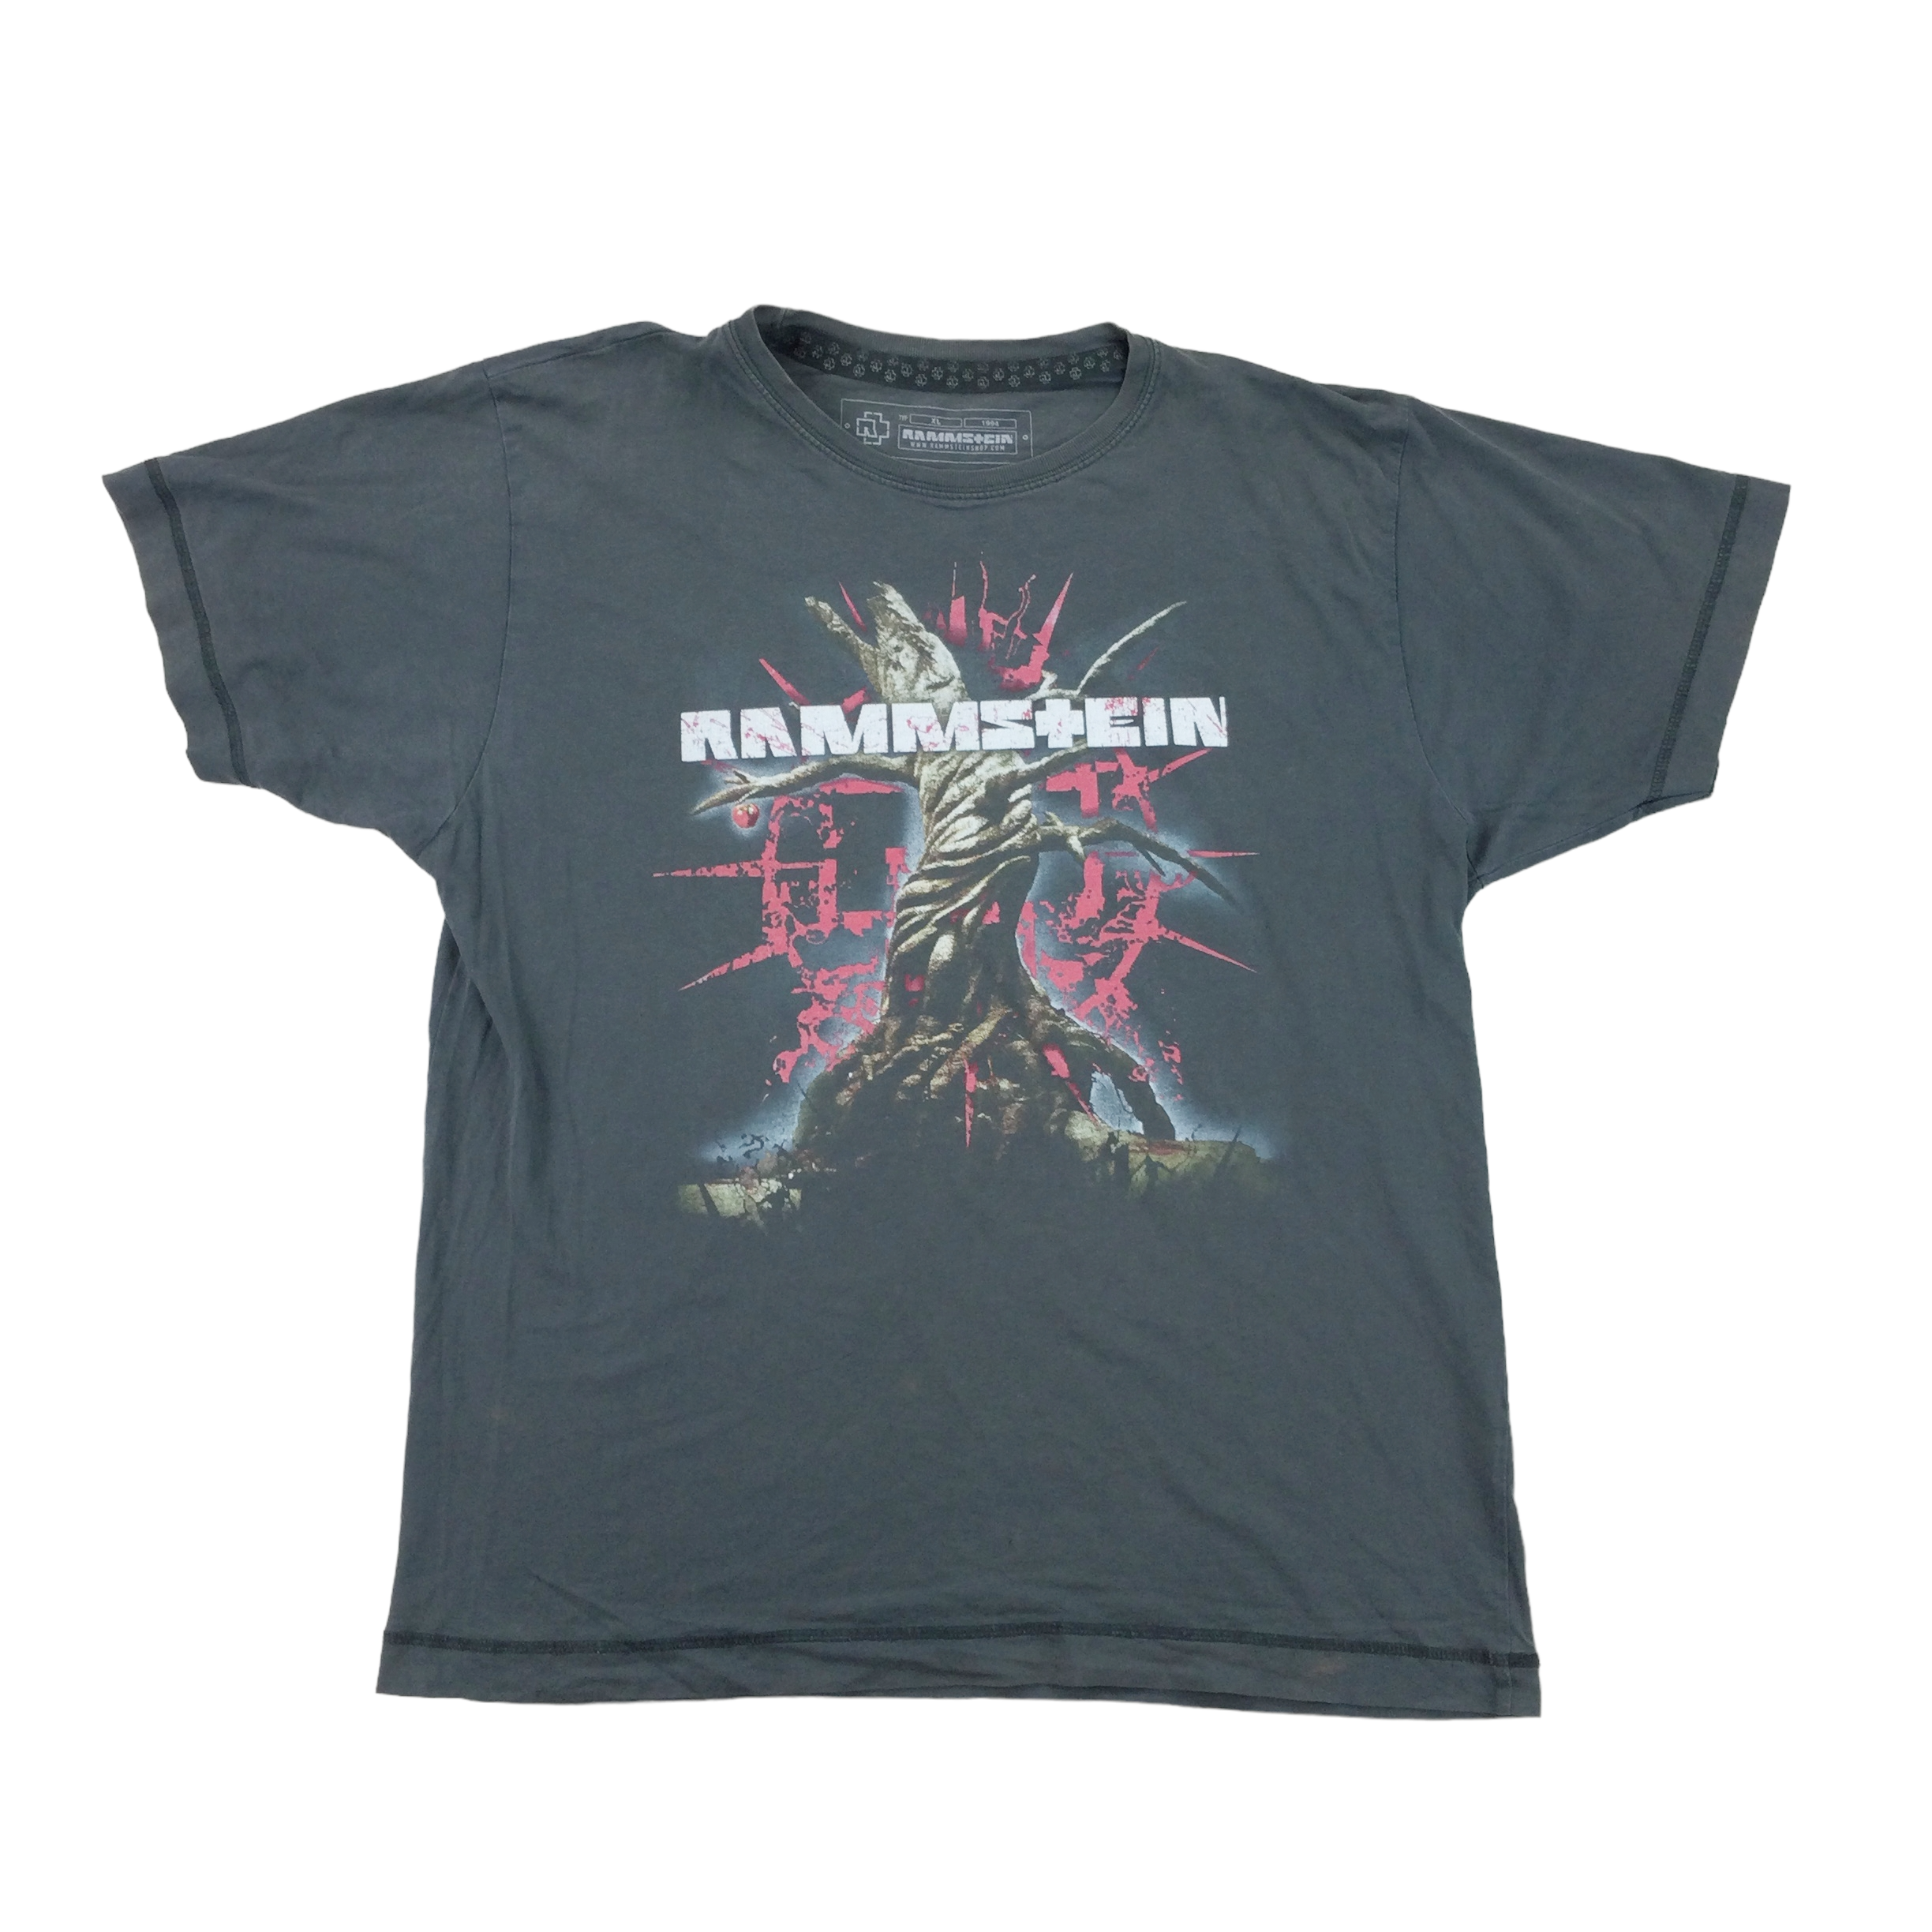 Rammstein 'Hier kommt die Sonne' T-Shirt - XL | Premium Vintage